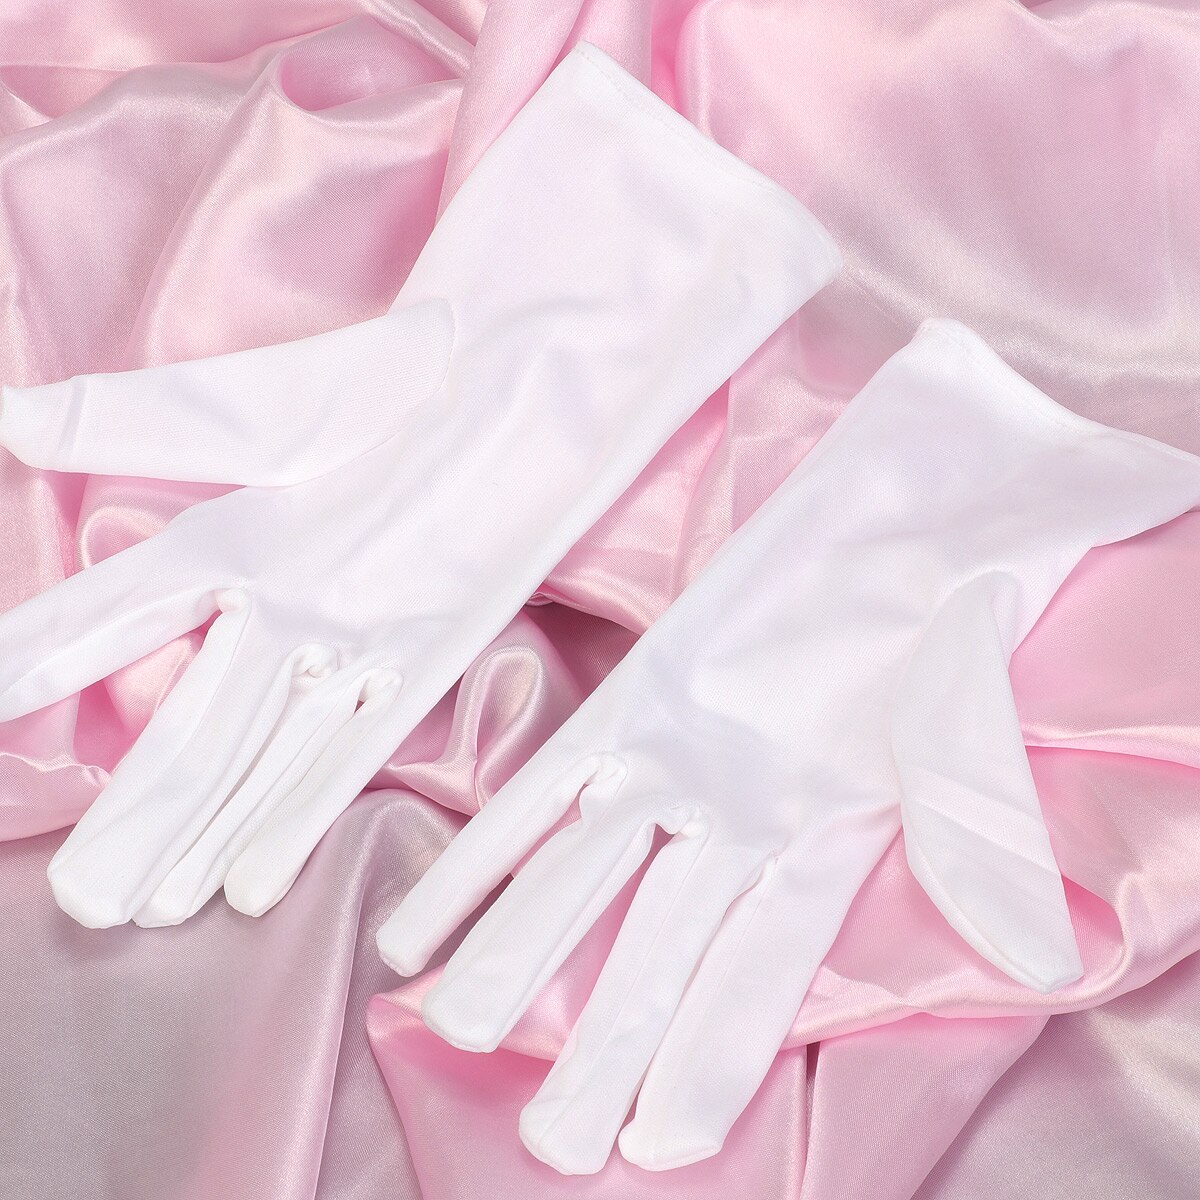 Dunne Witte Handschoenen Goochelaar Honor Guard Handen Protector Volledige Vinger Handschoenen Voor Mannen En Vrouwen Smoking Etiquette Receptie Handschoenen